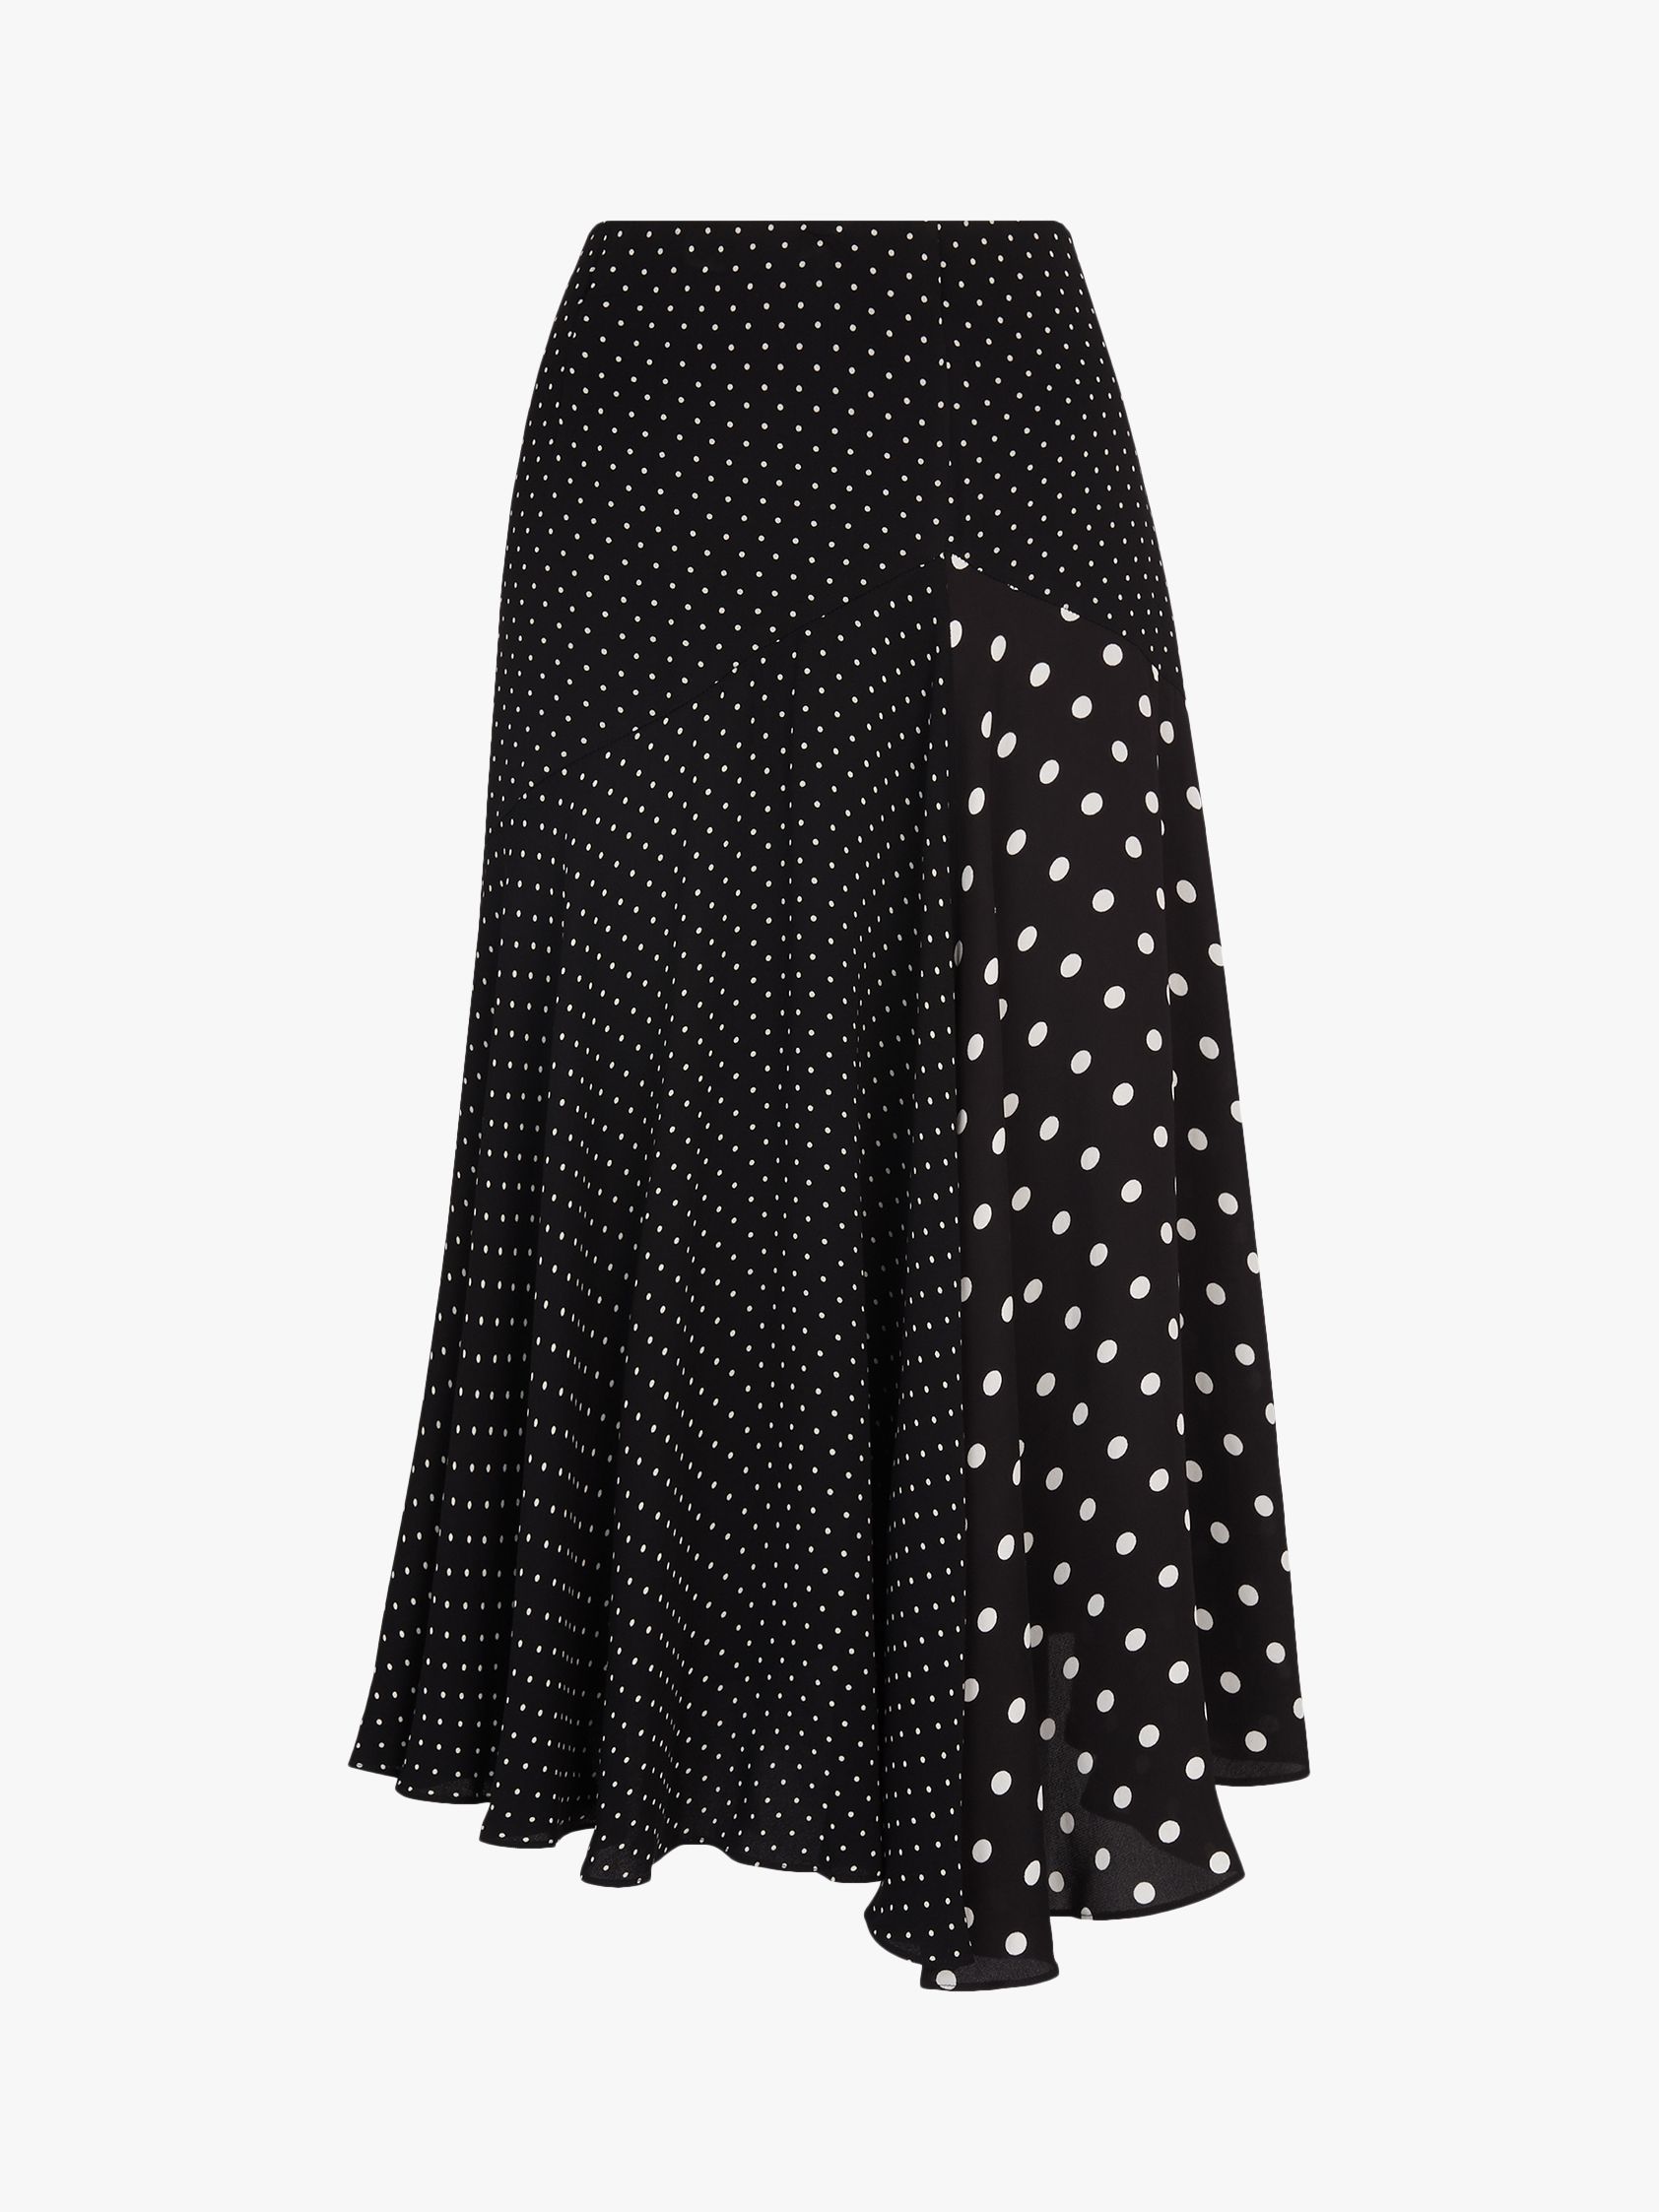 Whistles Spot Print Asymmetric Skirt, Black/White